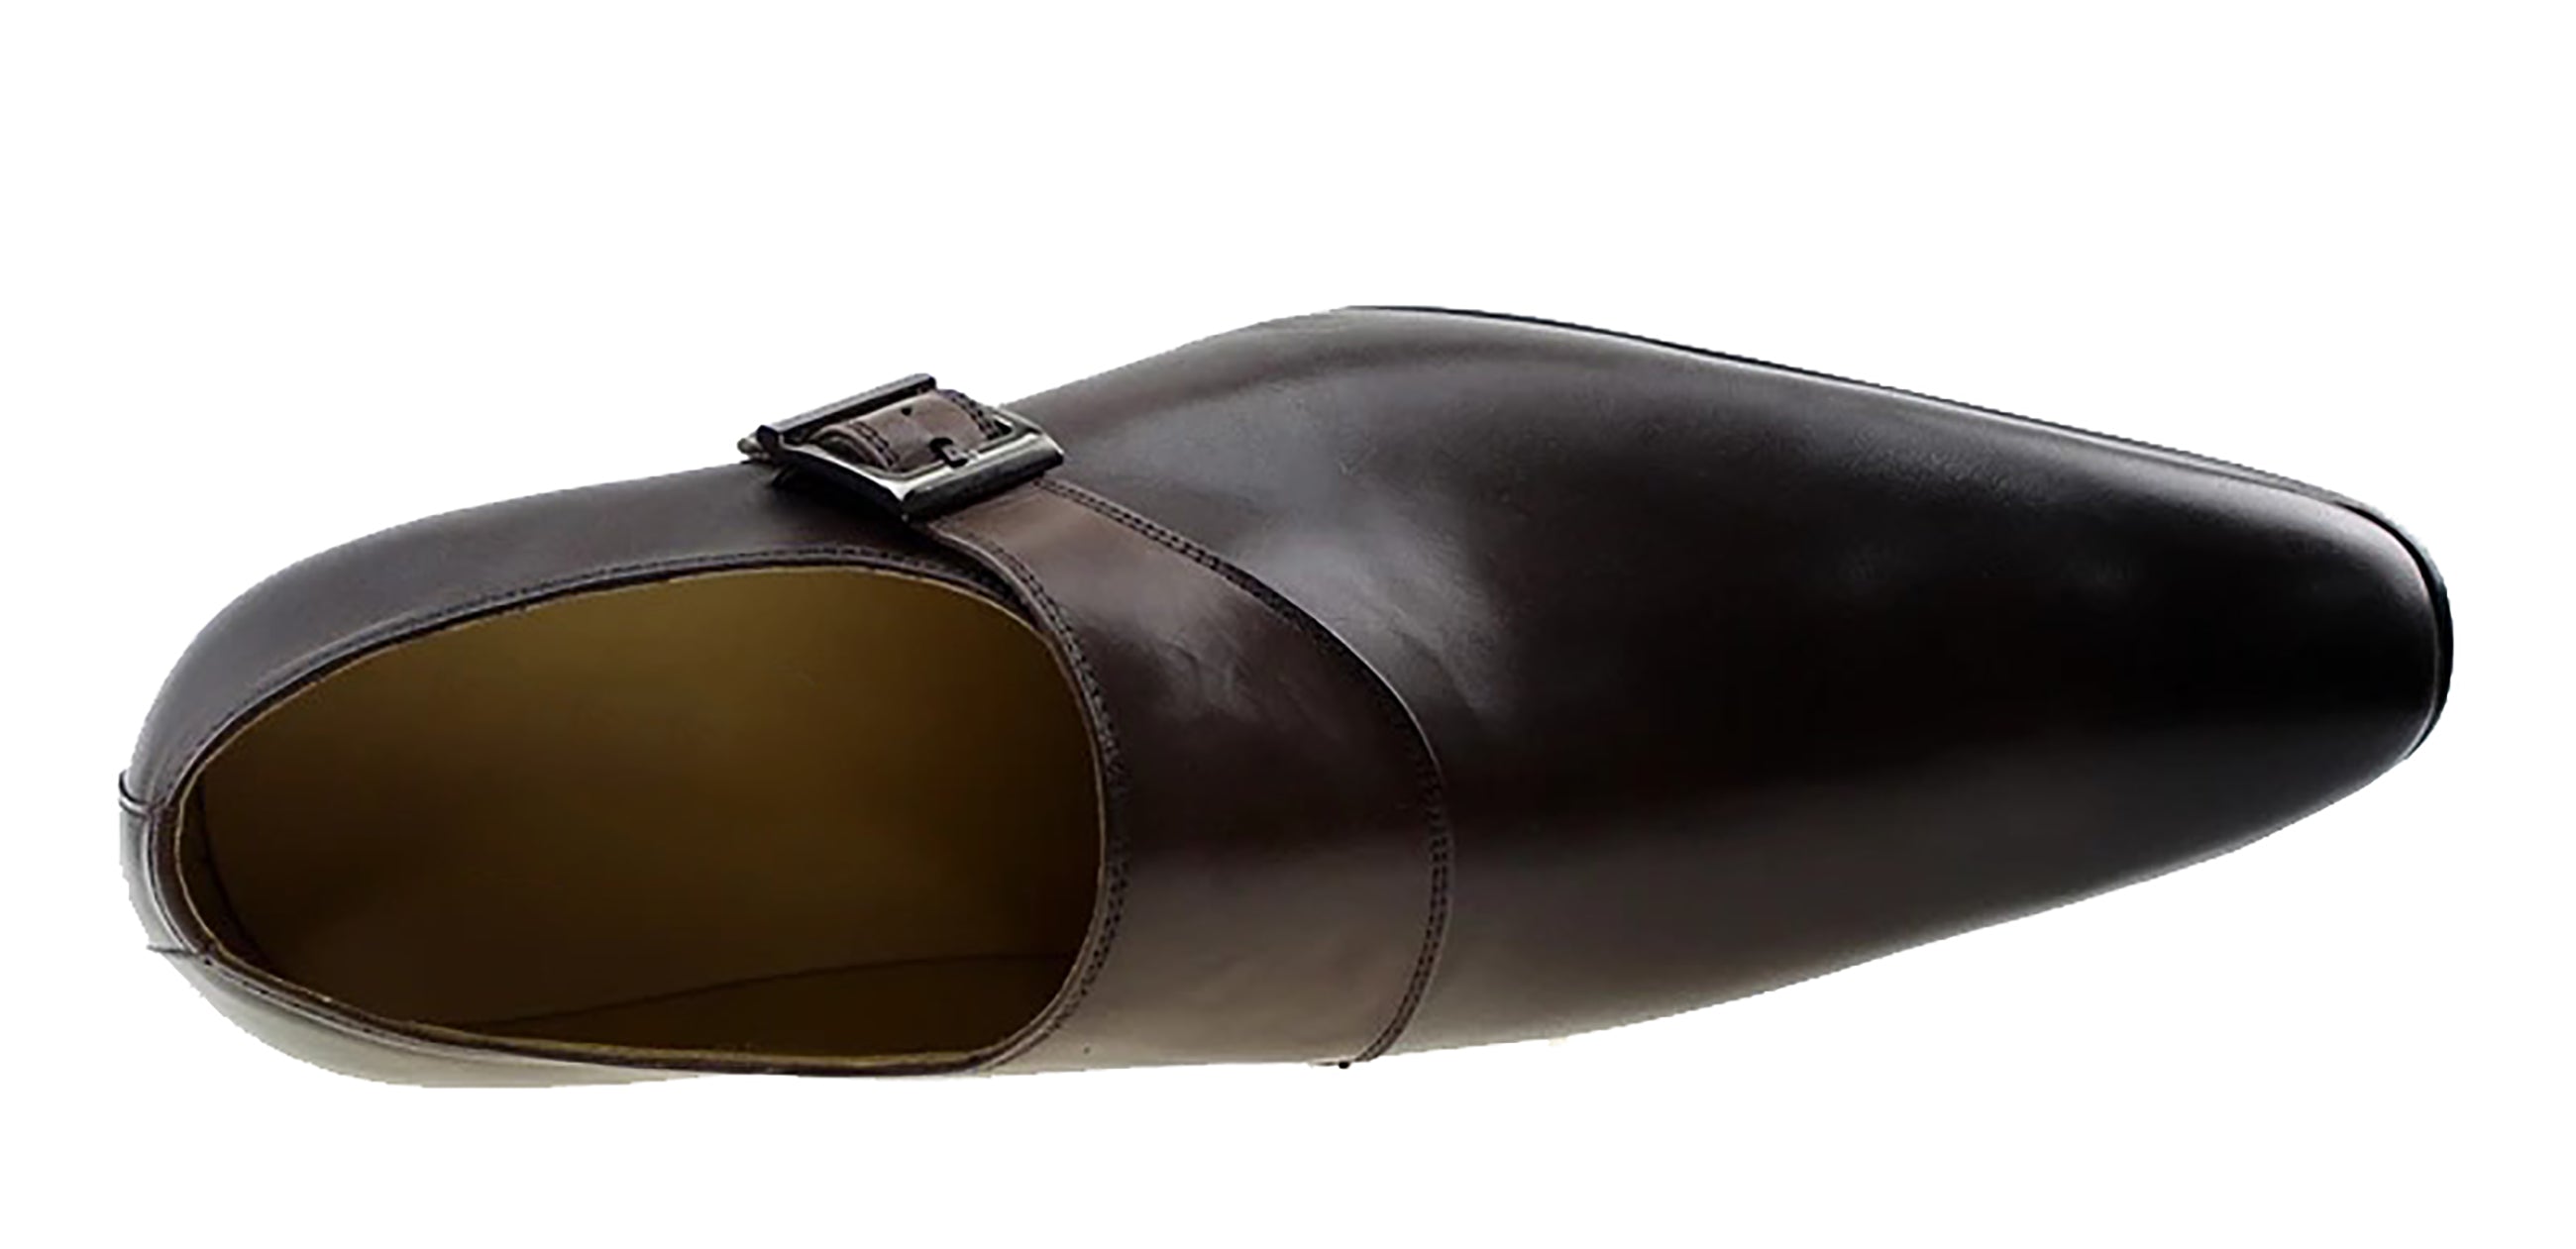 Men's Dress Formal Single Buckle Monk Strap Loafers